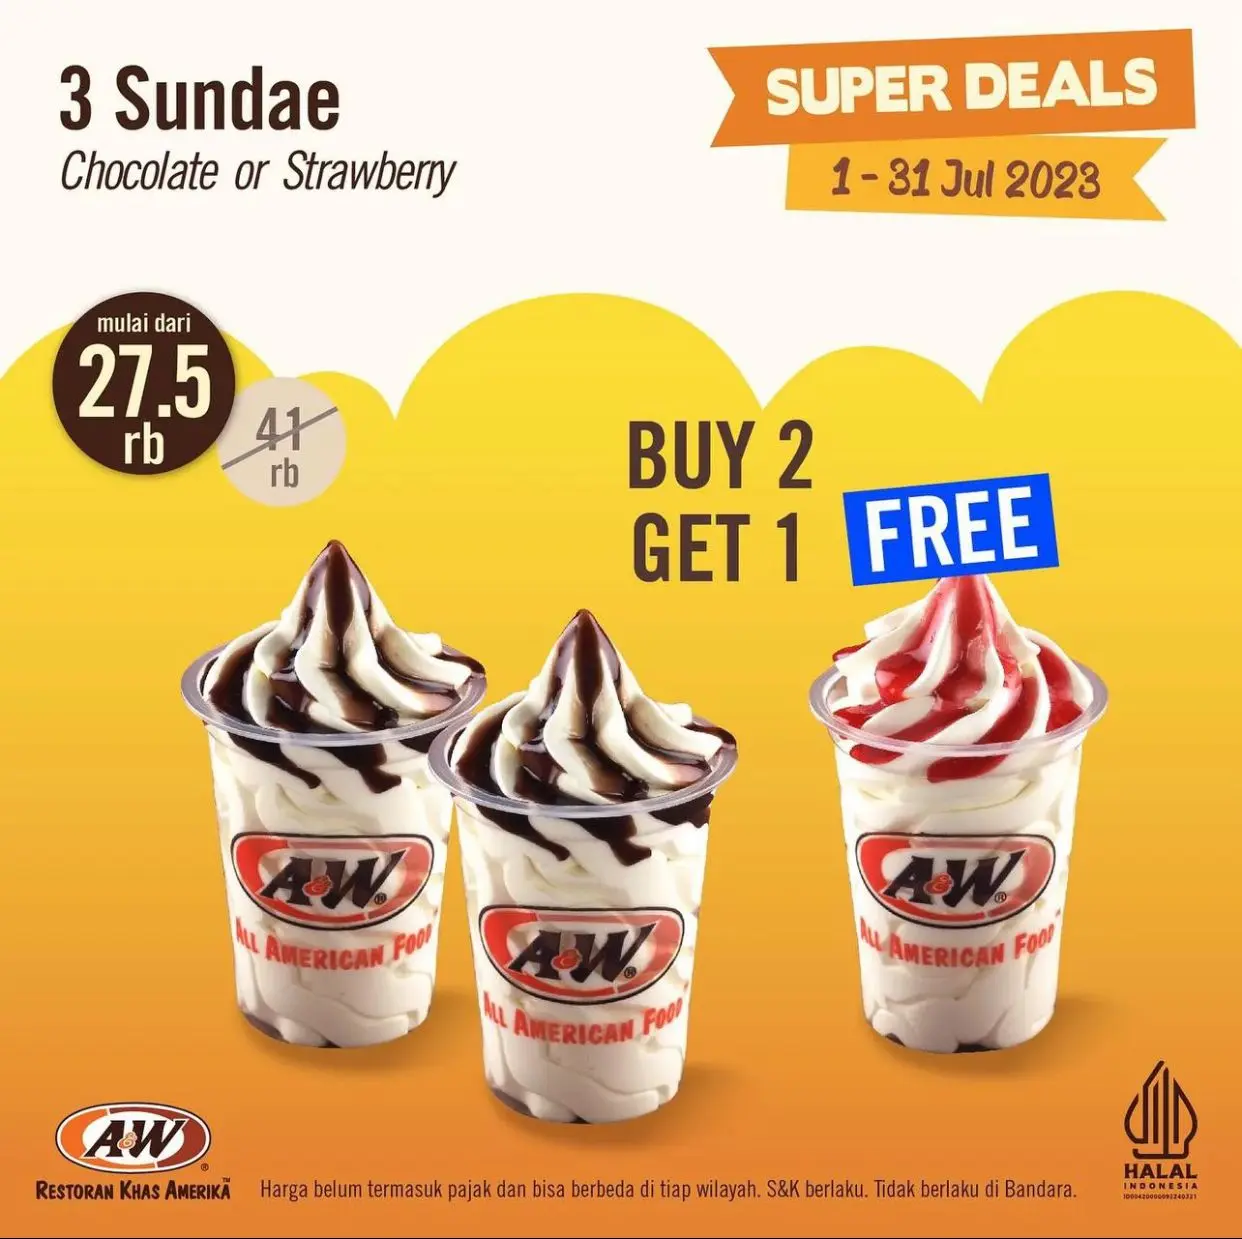 Buy 2 Get 1, Nikmati Kenikmatan Promo Super Deals A&W!